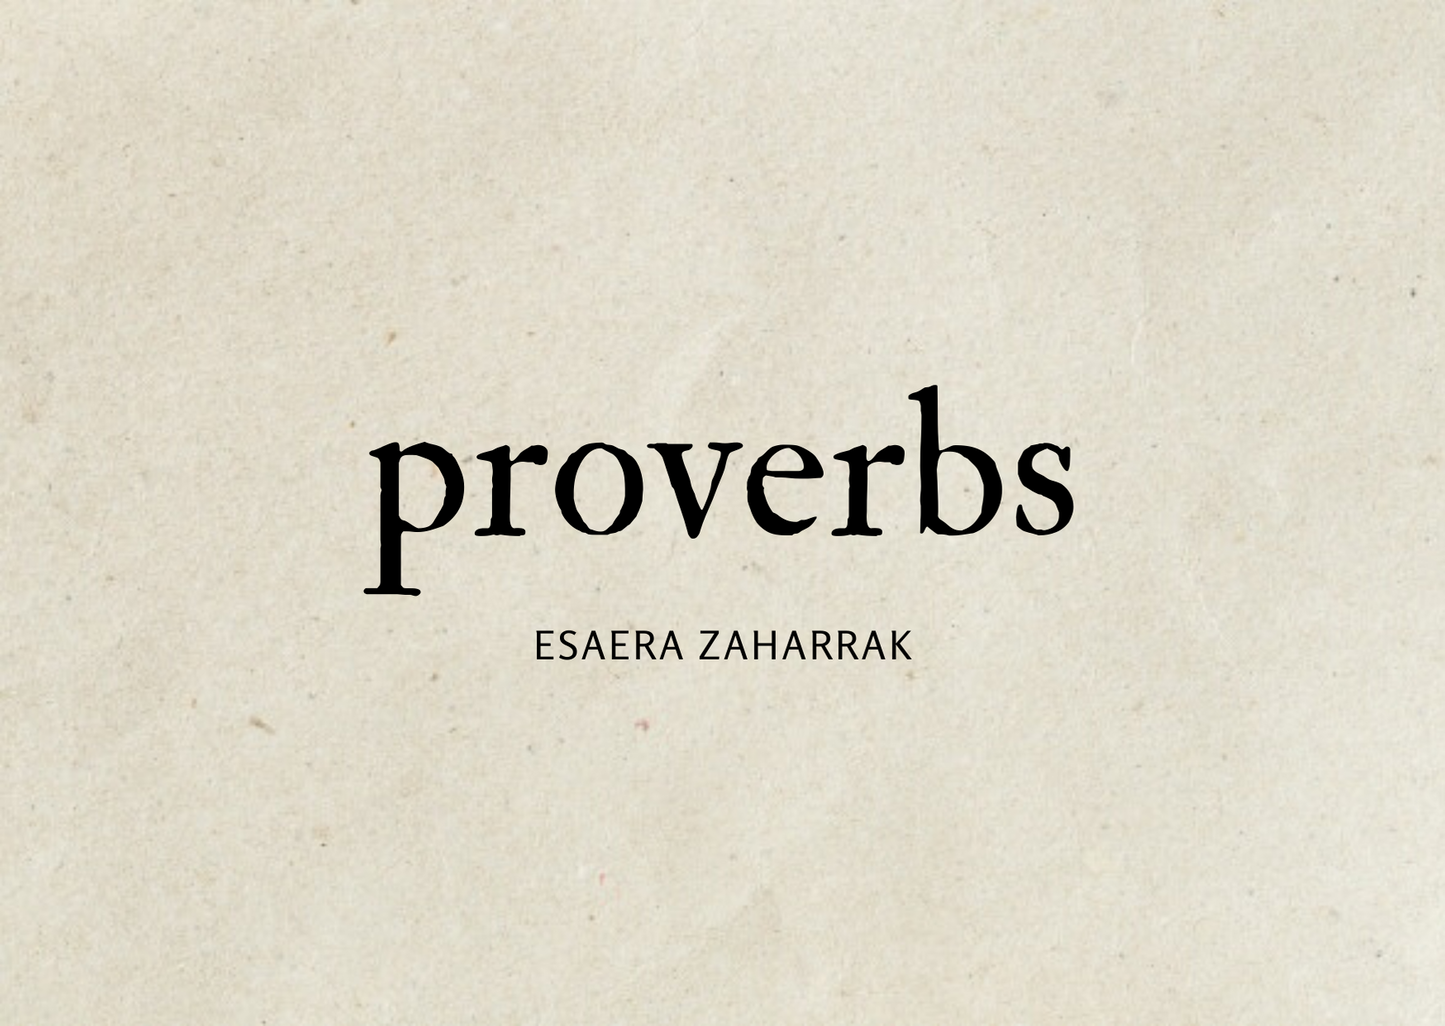 basque proverbs from Bihotz Paris, euskal esaera zaharrak 